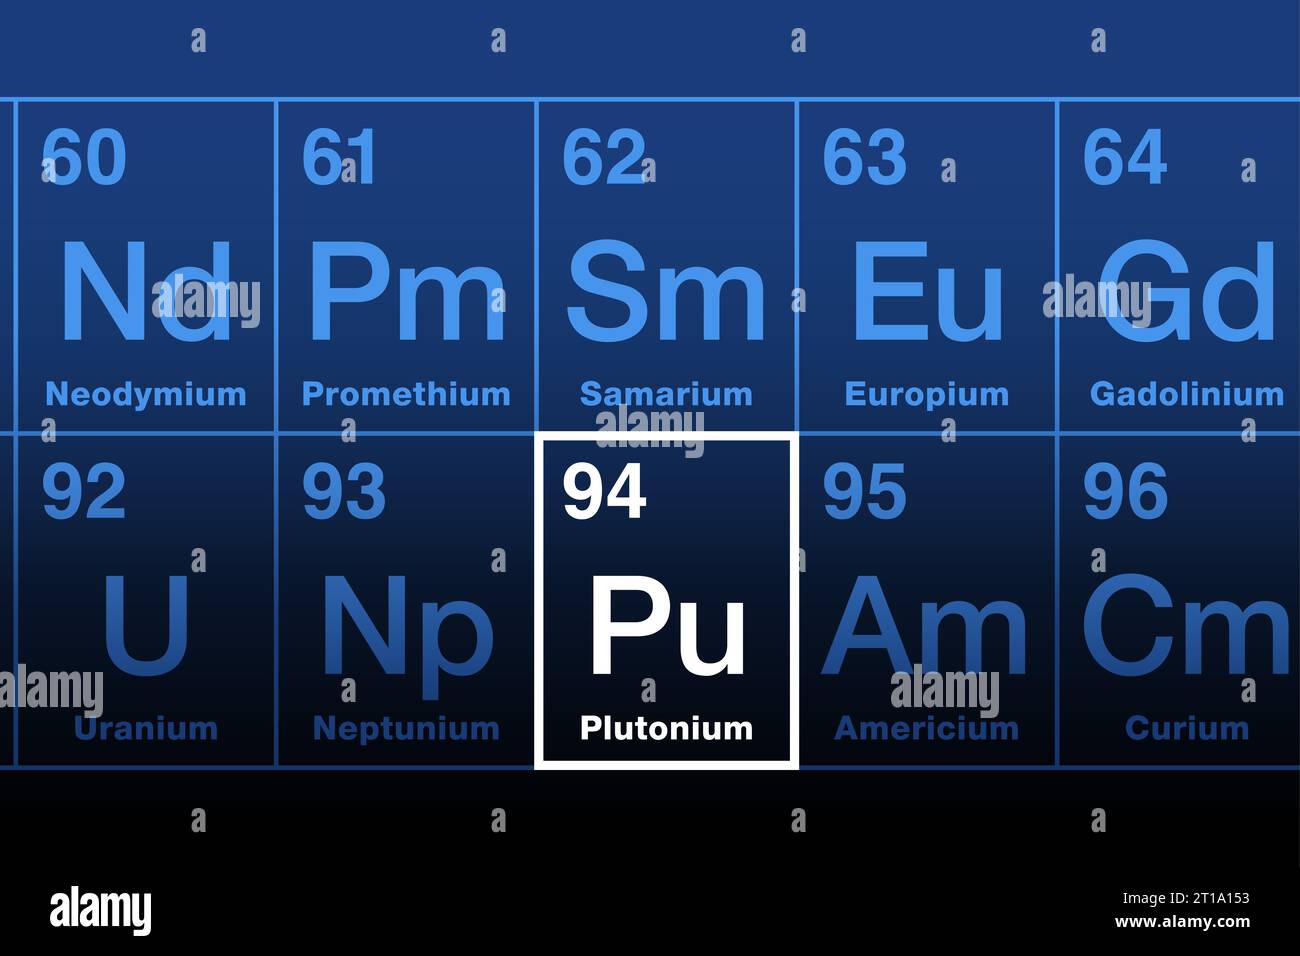 Plutonium im Periodensystem der Elemente der Aktinidreihe. Radioaktives und spaltbares Metall. Elementsymbol Pu, benannt nach Pluto. Atomzahl 94. Stockfoto